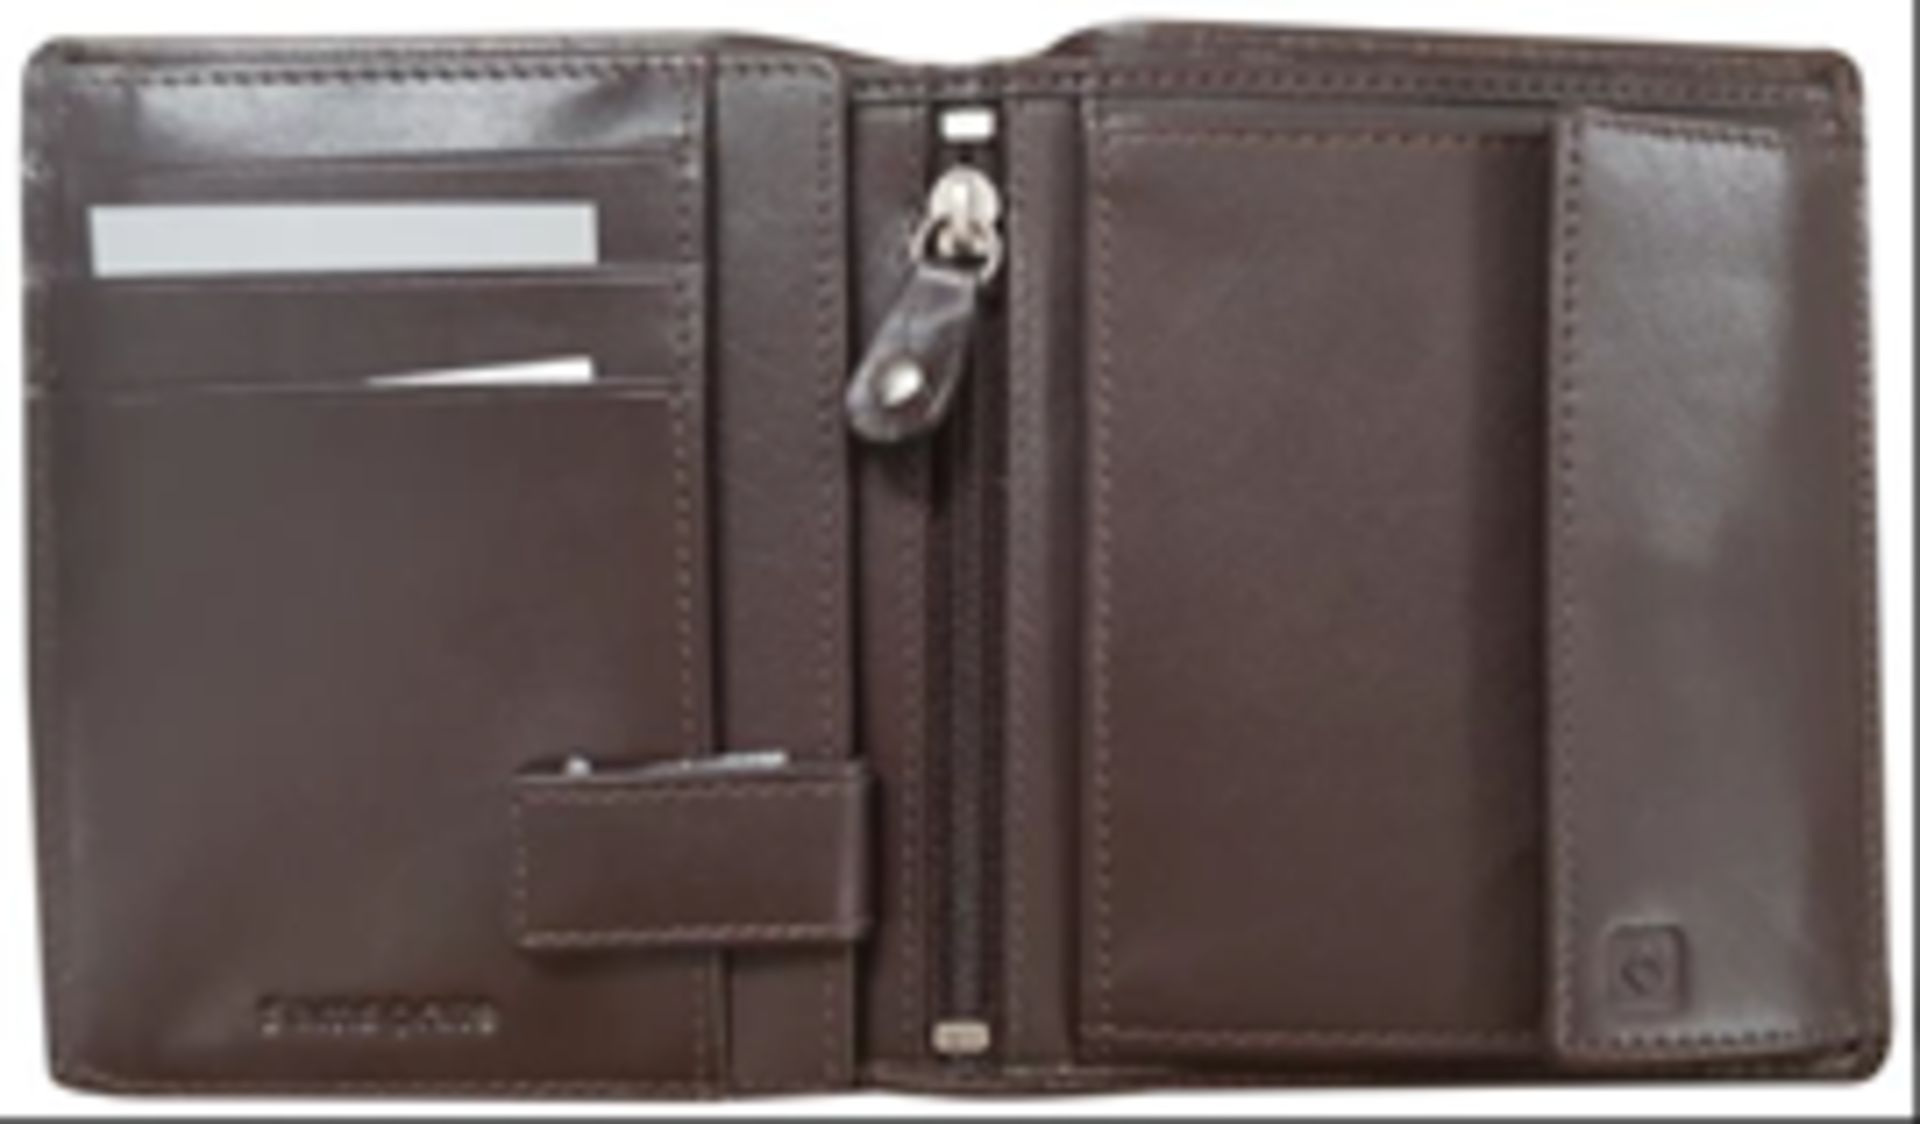 V *TRADE QTY* Brand New Samsonite Gents Black Leather Wallet - 5 Credit Card Slots 2 Larger